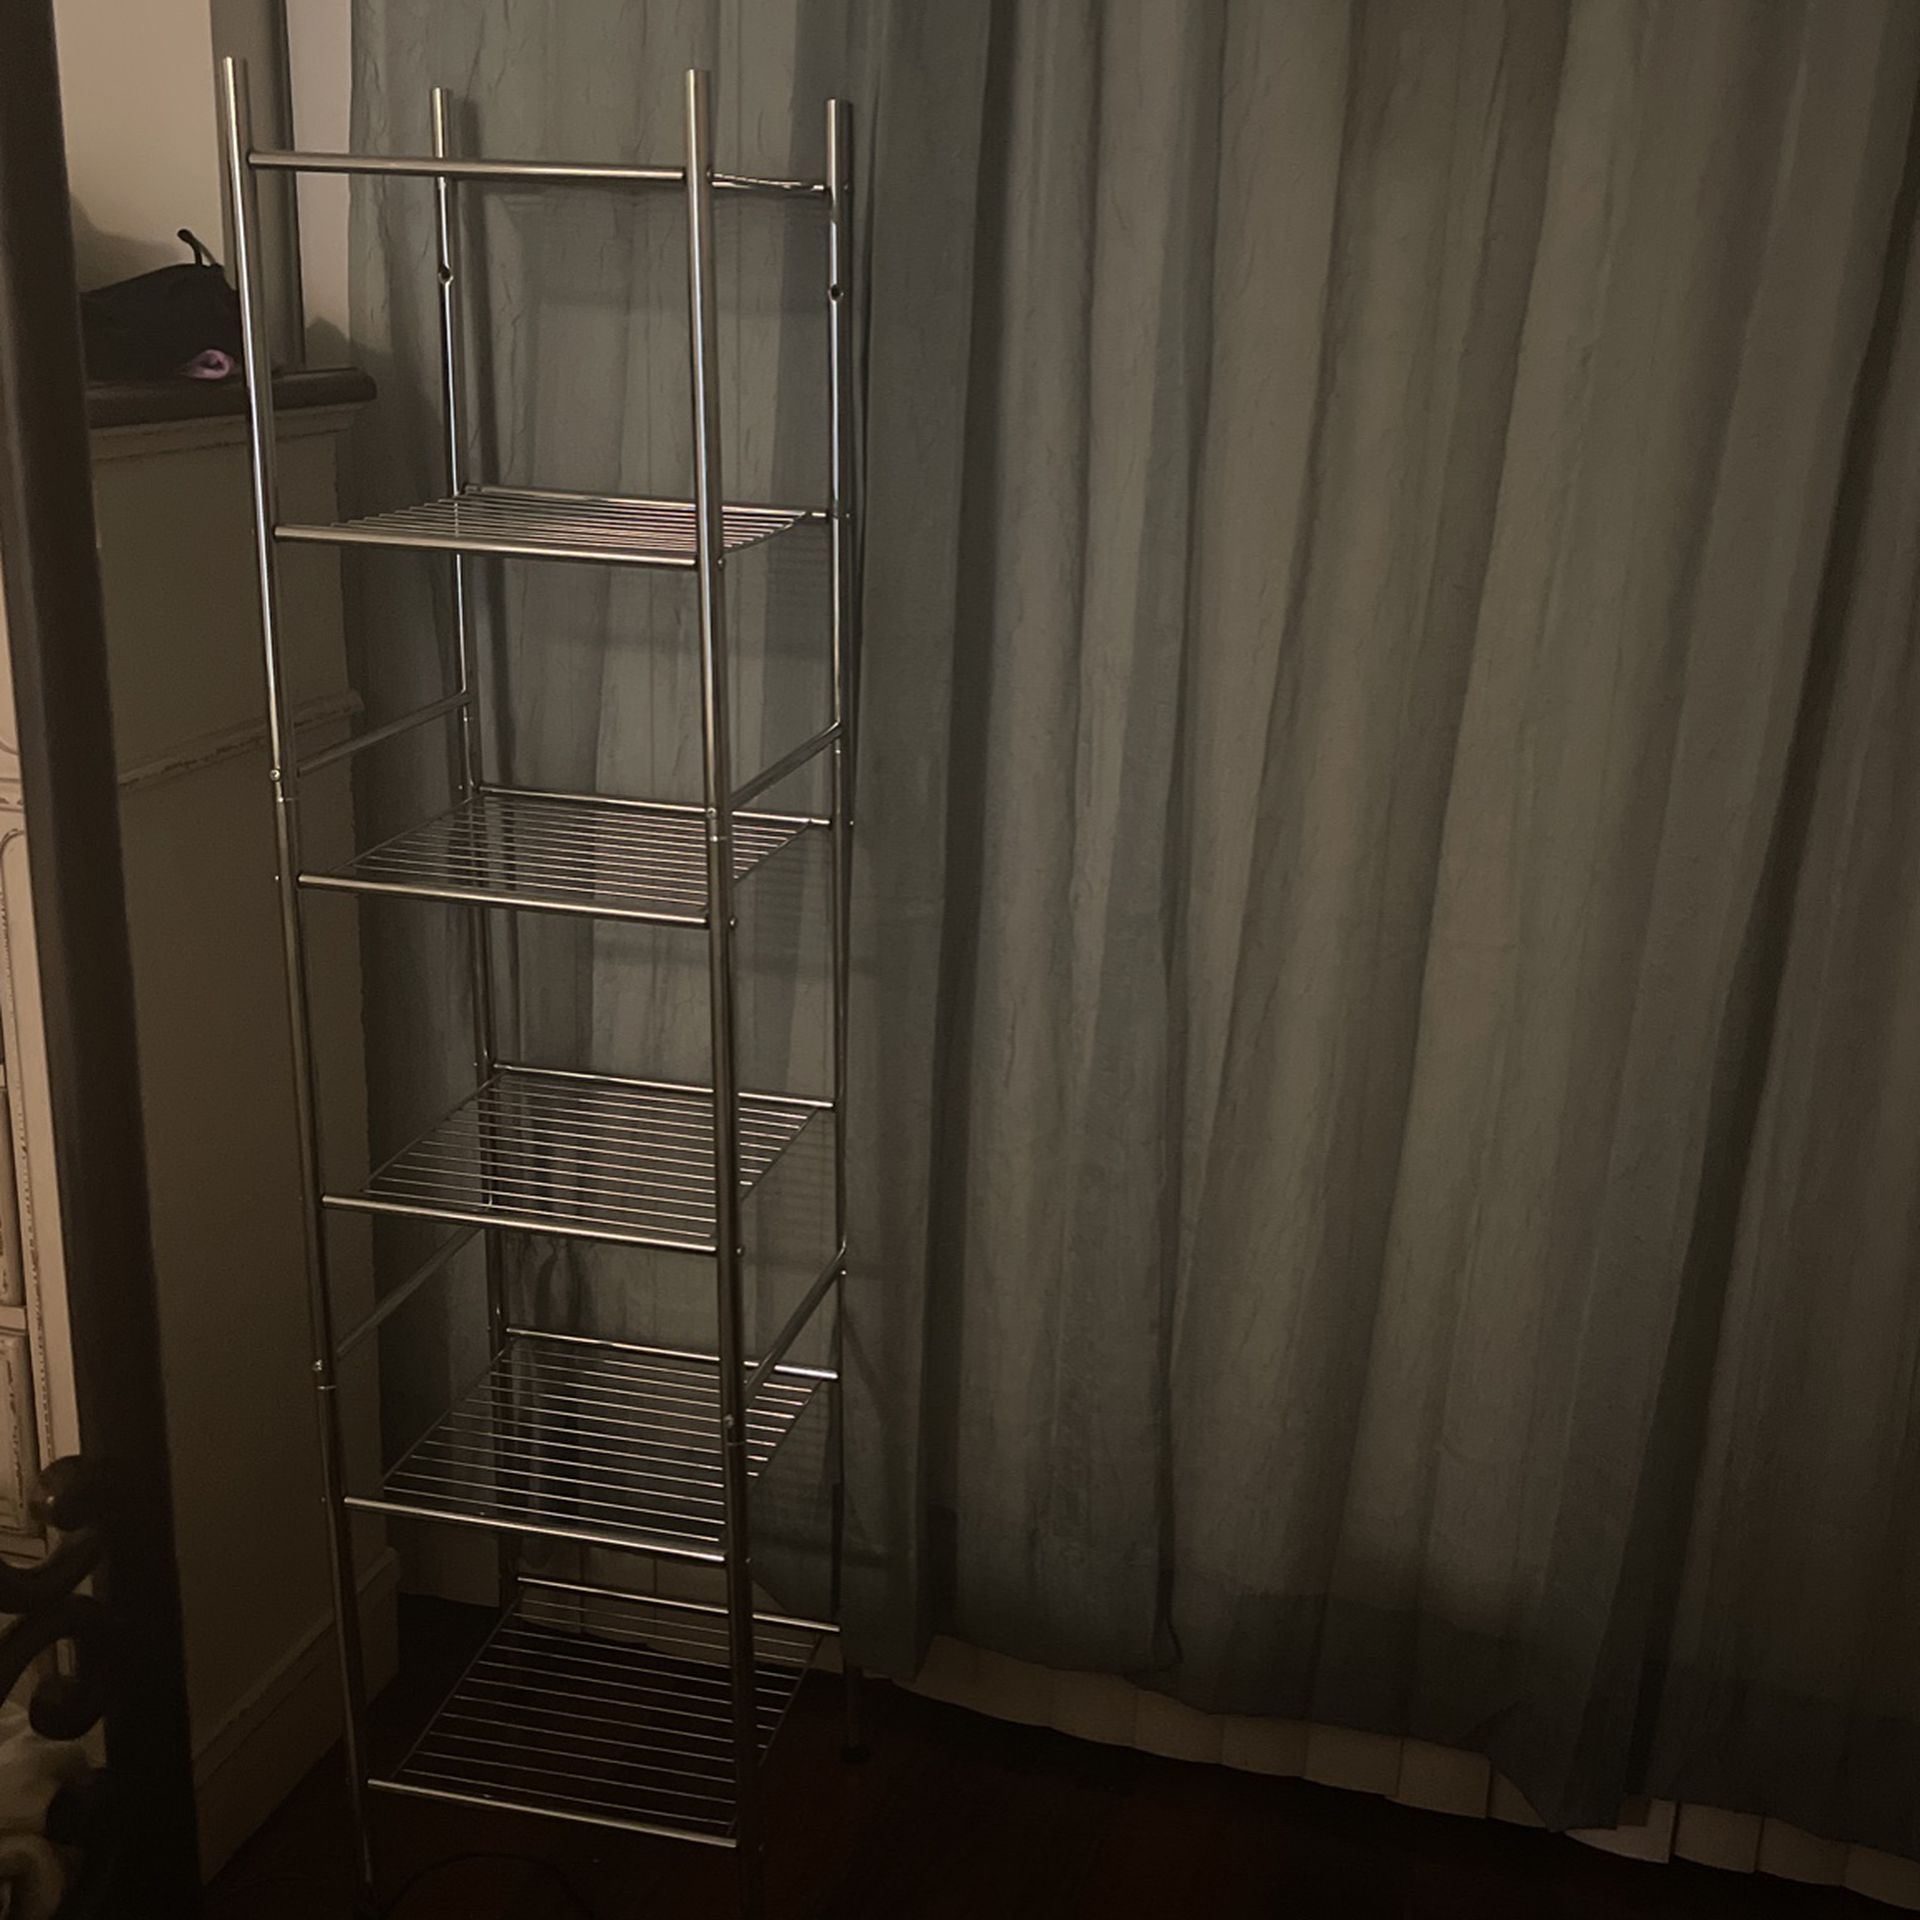  6 Shelf Rack For Closet   Metal   13x13